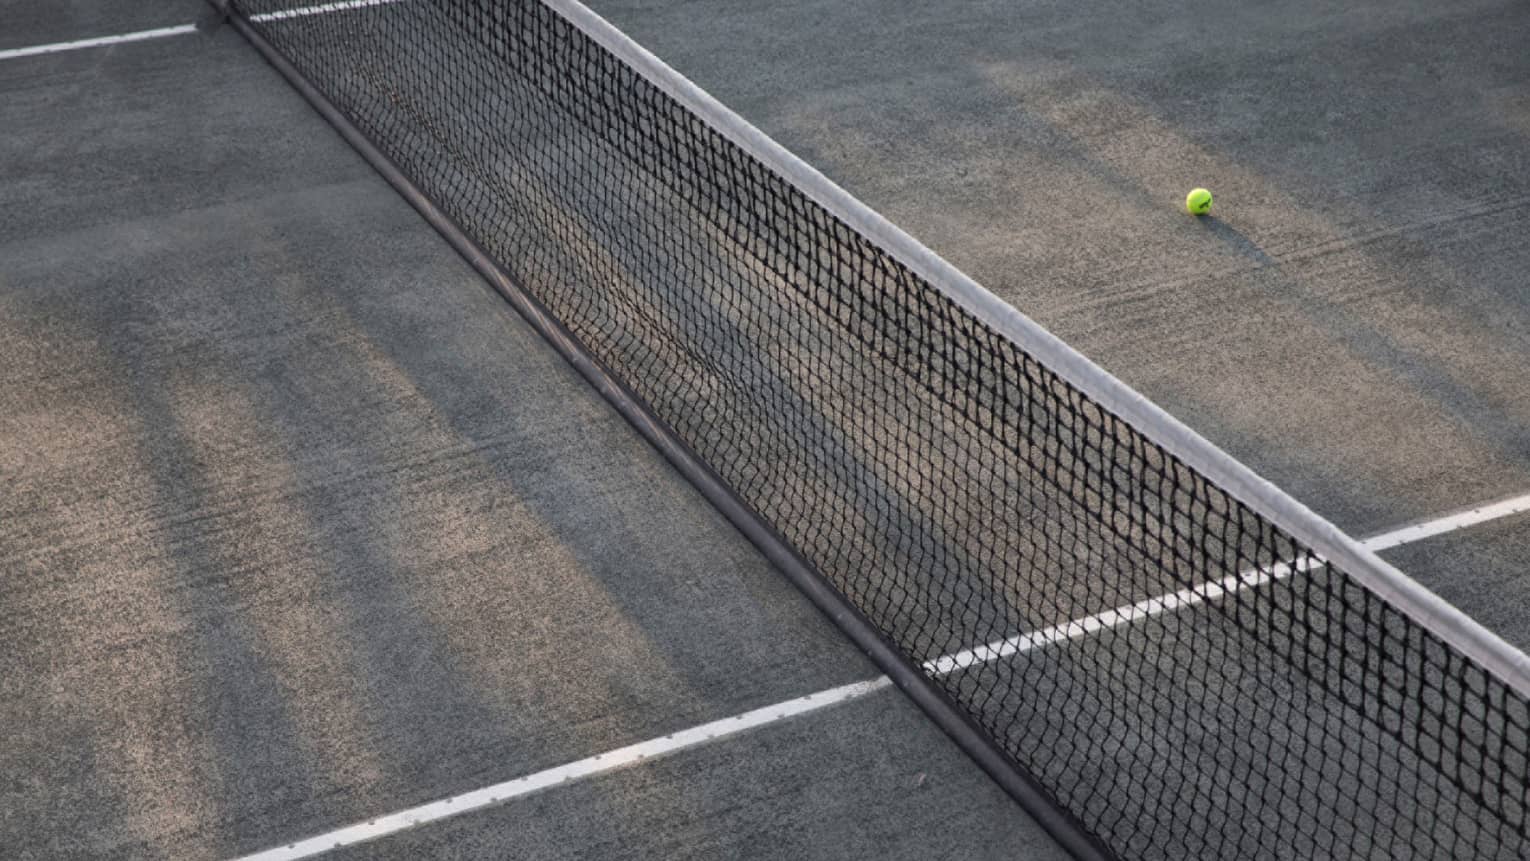 A lone tennis ball lies near the net on an empty court